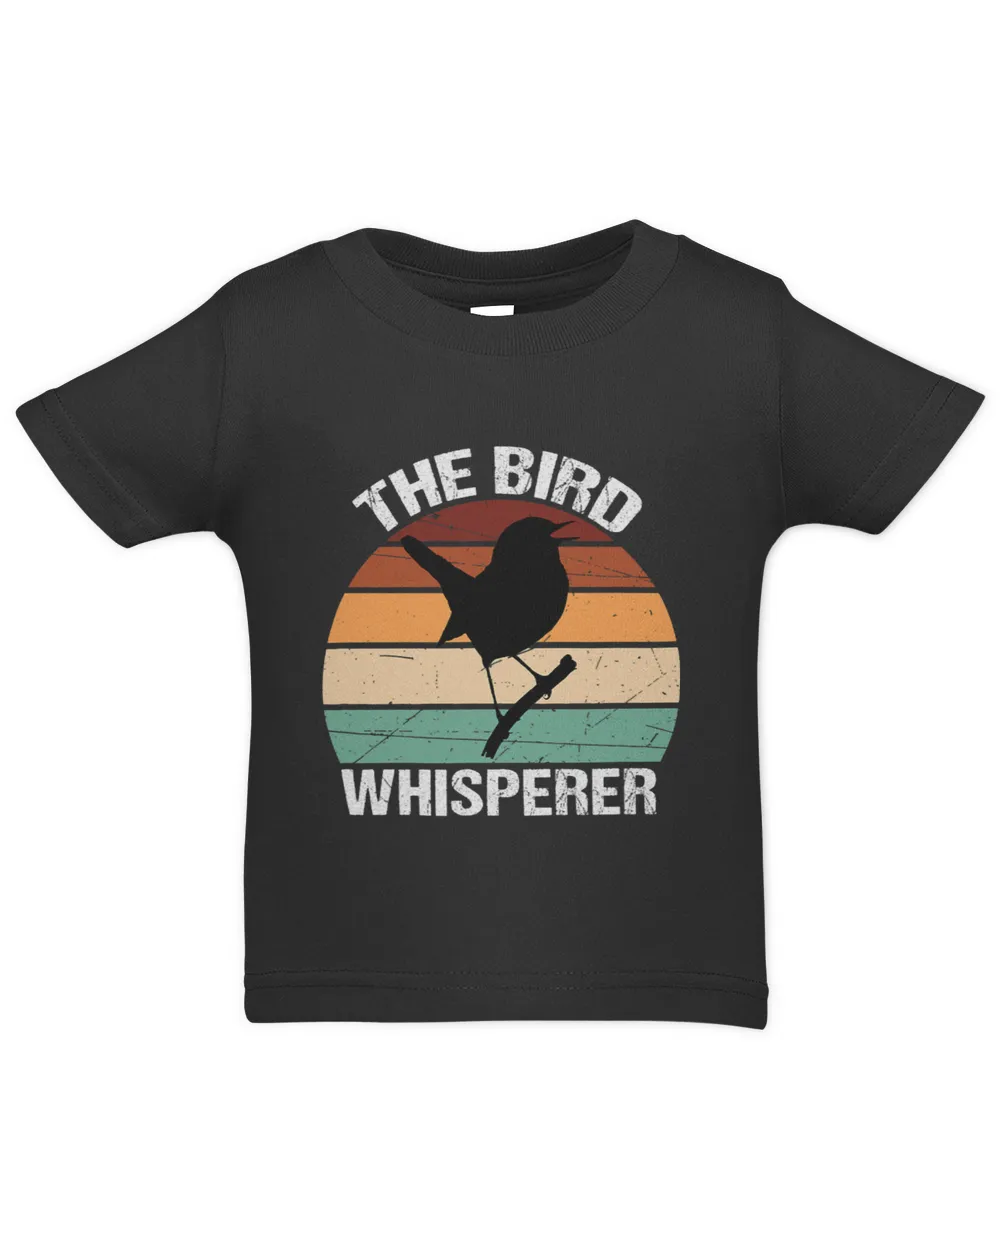 The Bird Whisperer BirdWatching Lover Retro Birder Birding